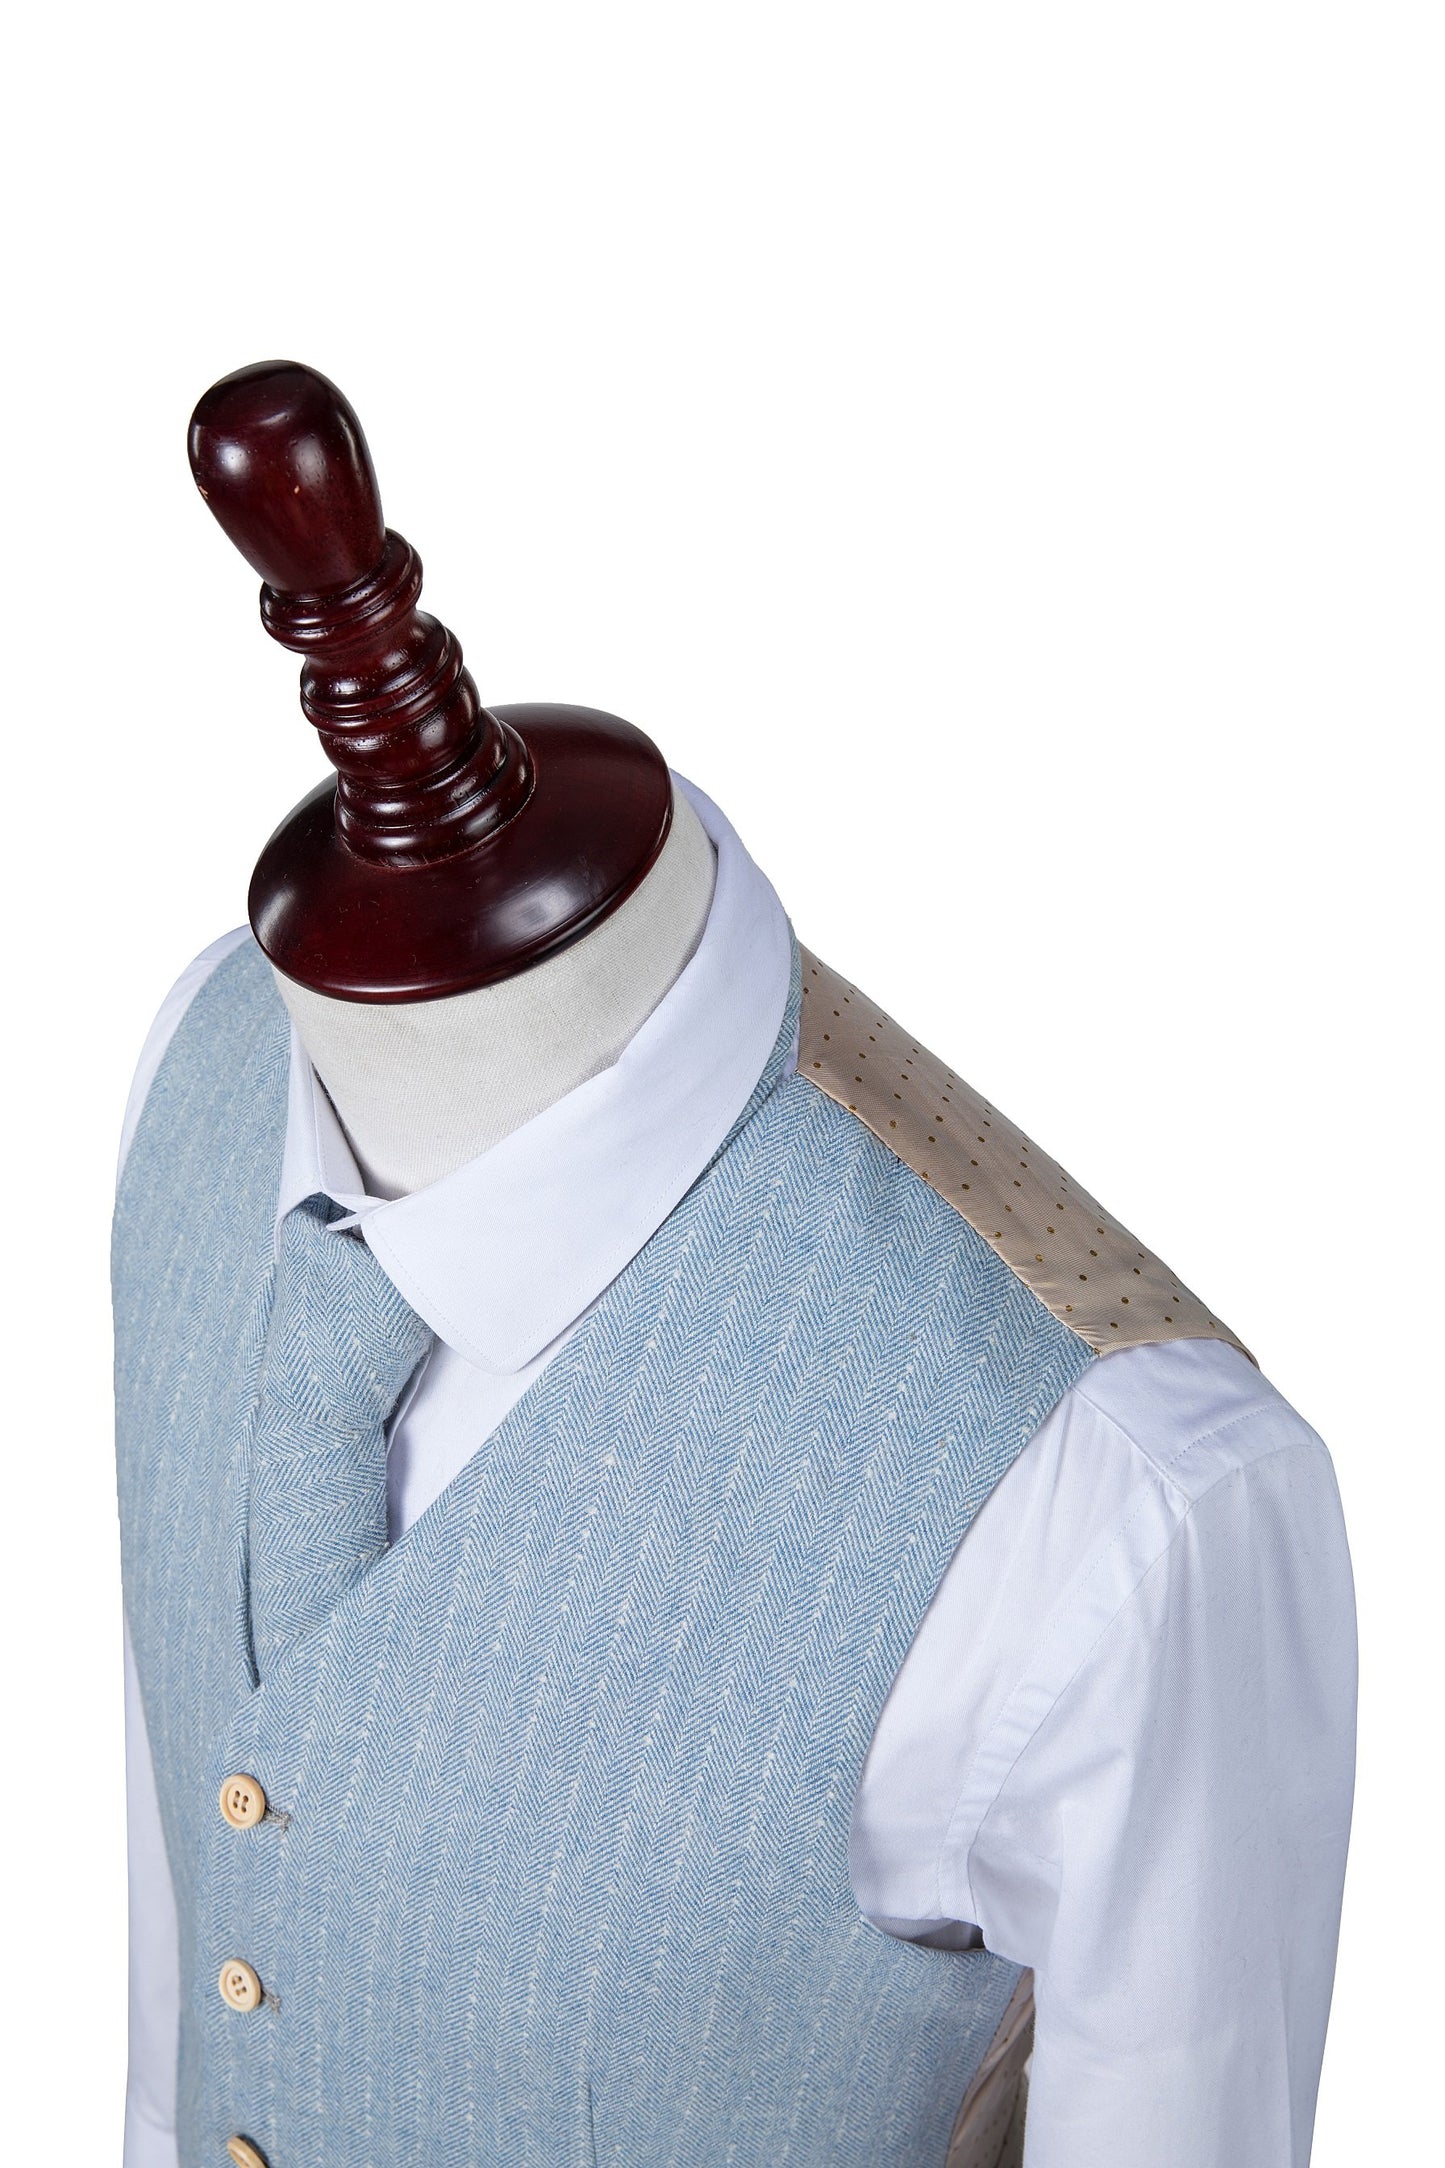 Light Blue Herringbone Stripe Tweed Suit